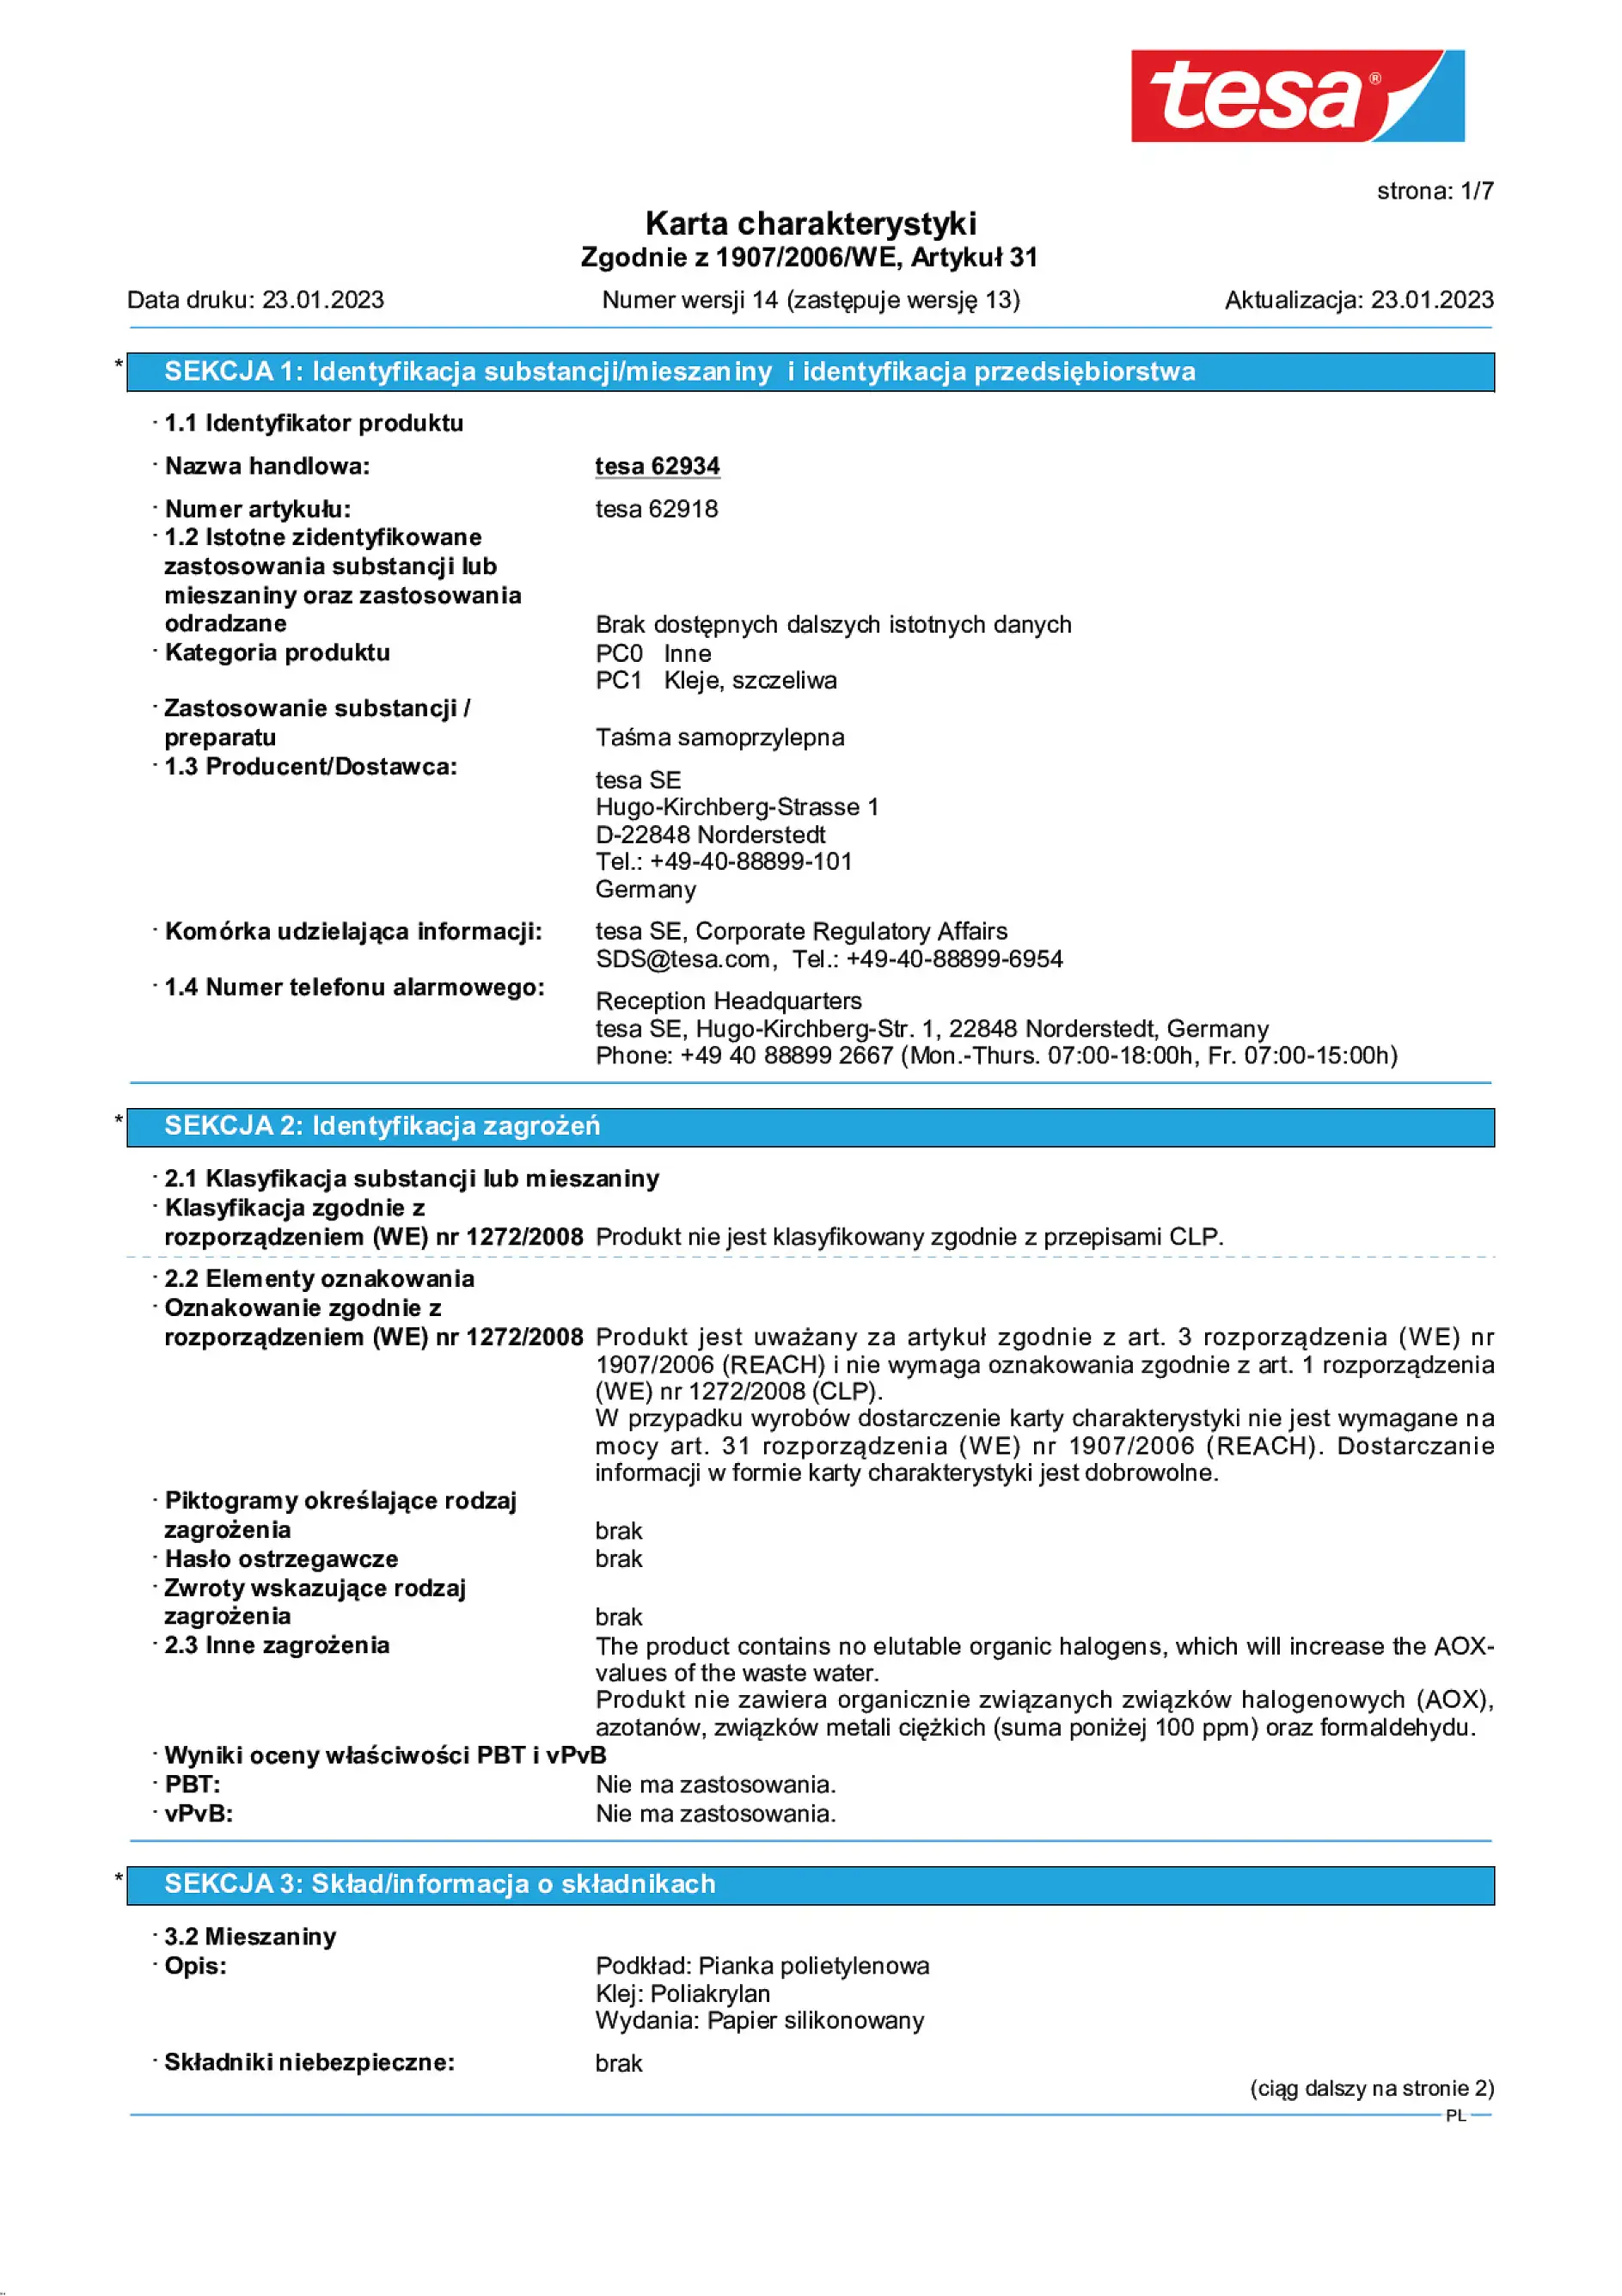 Safety data sheet_tesa® 62934_pl-PL_v14